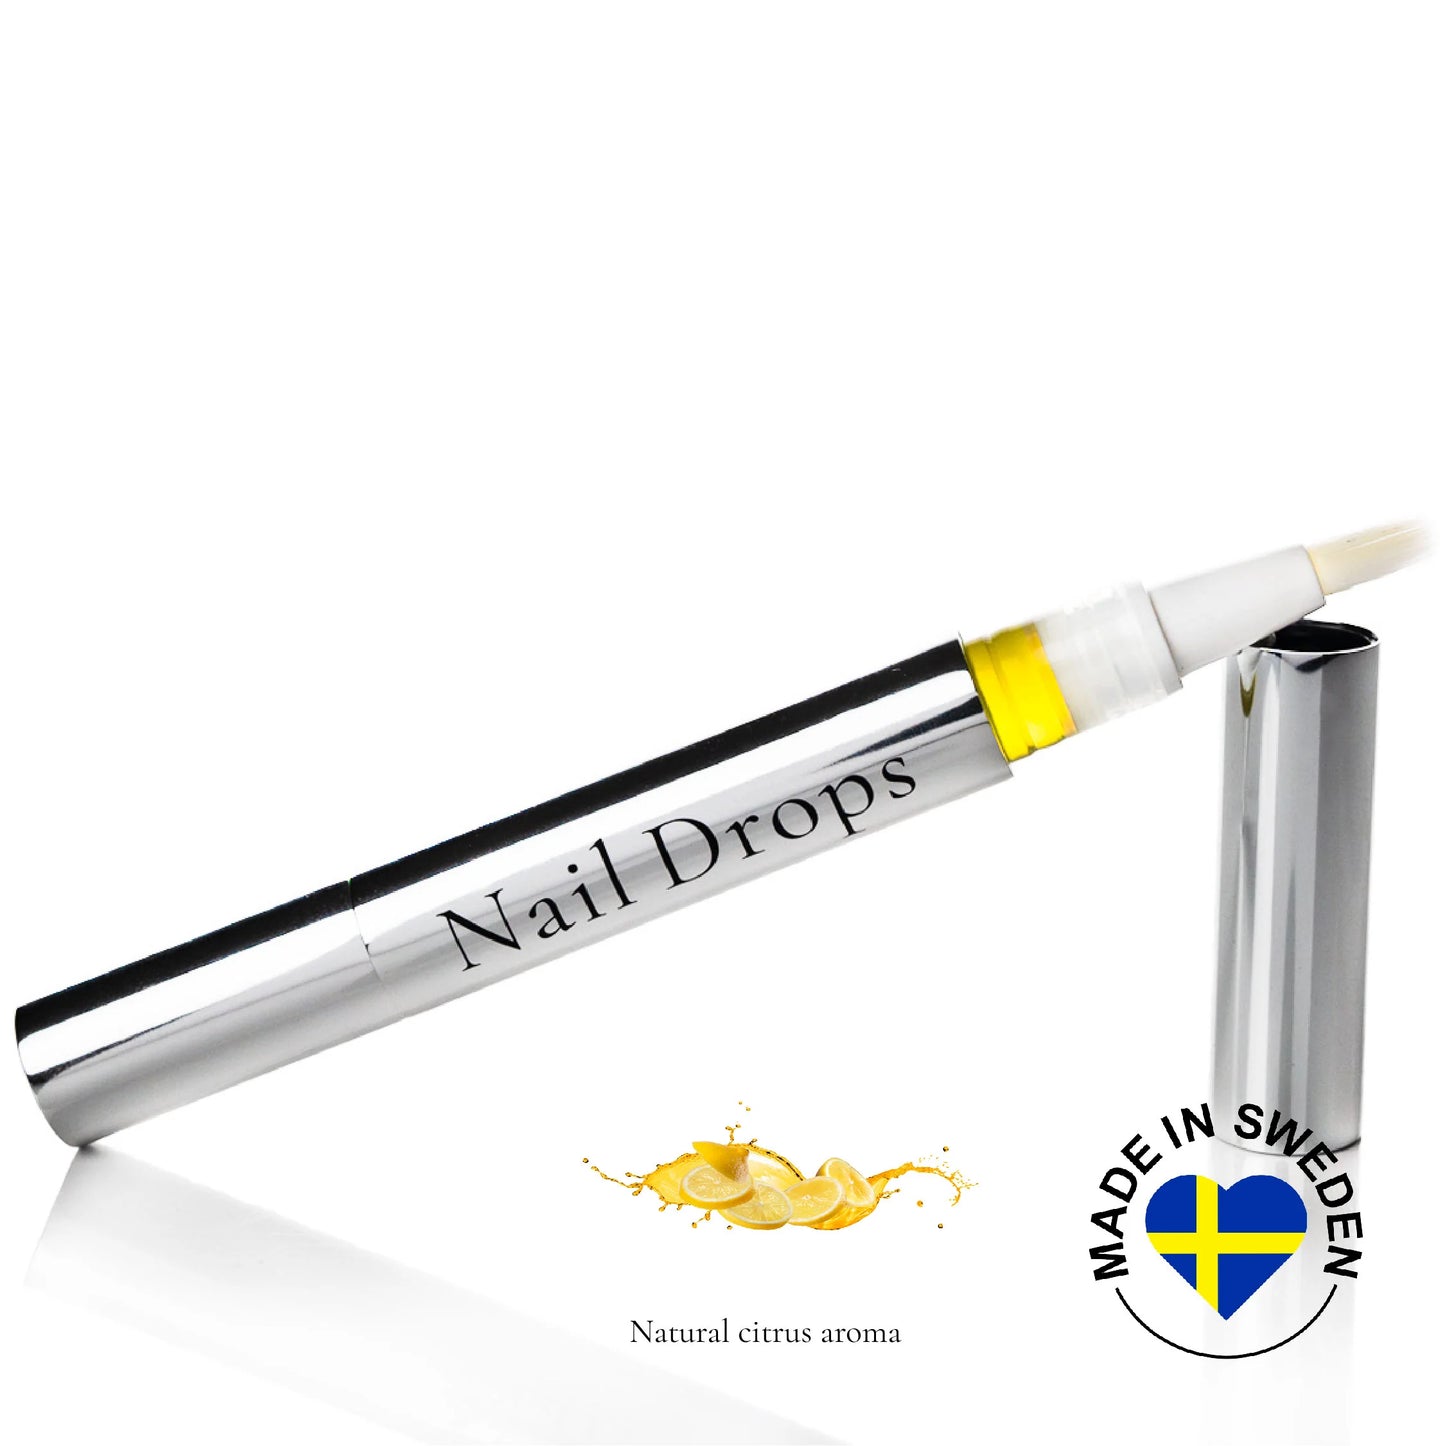 Camilla of Sweden Nail Drops pen